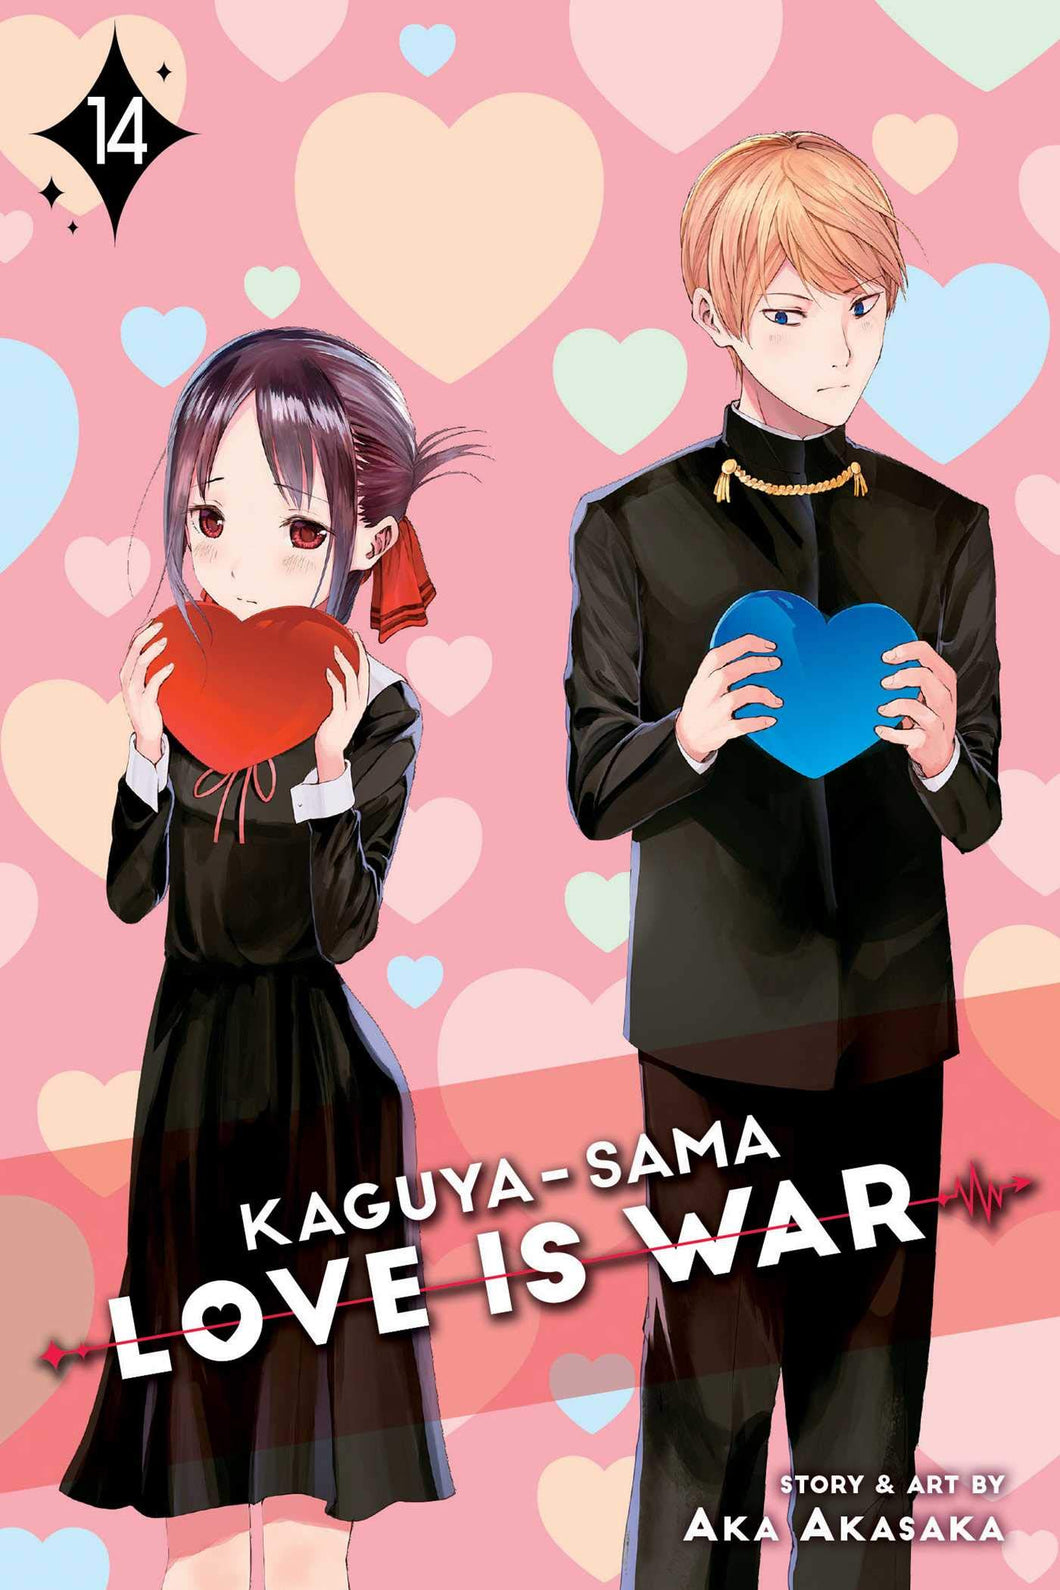 Kaguya-Sama Love Is War Volume 14